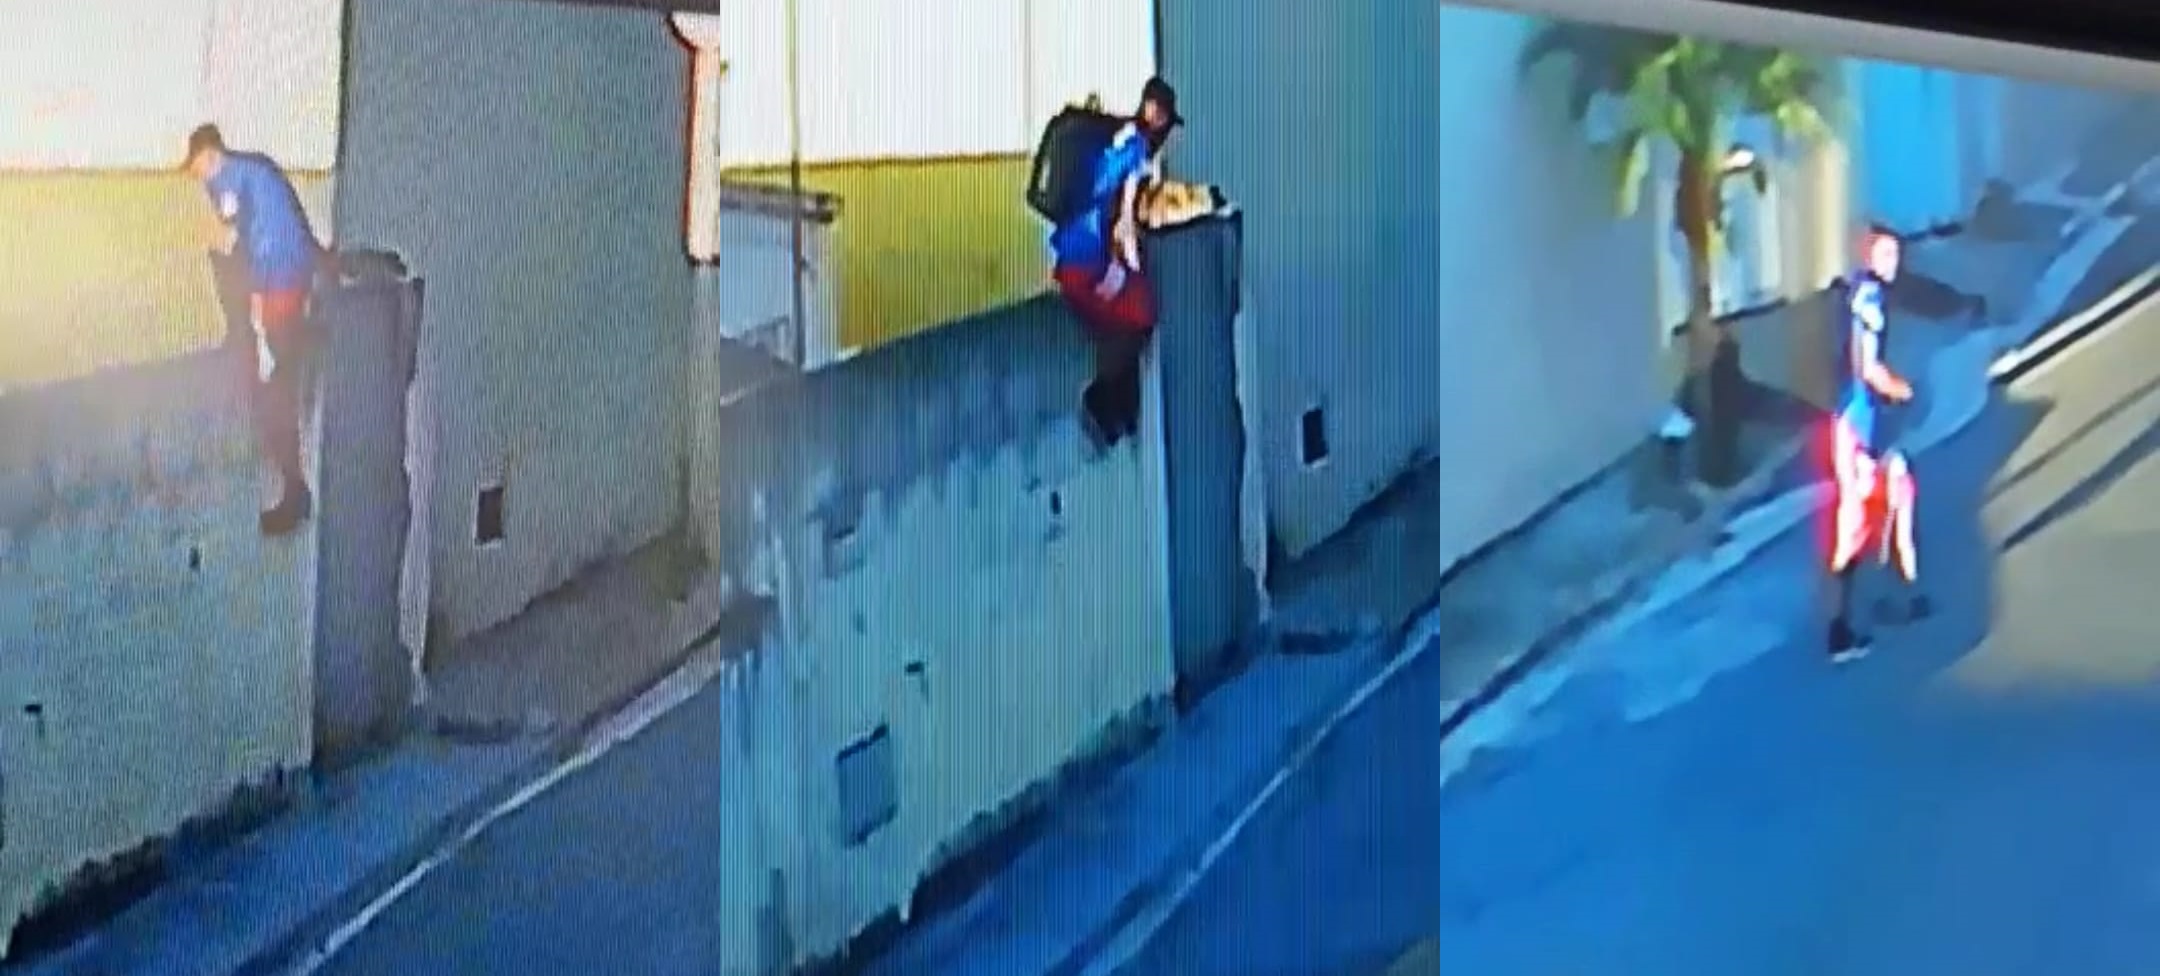 Ladrão pula muro e furta residência na Rua Tiradentes